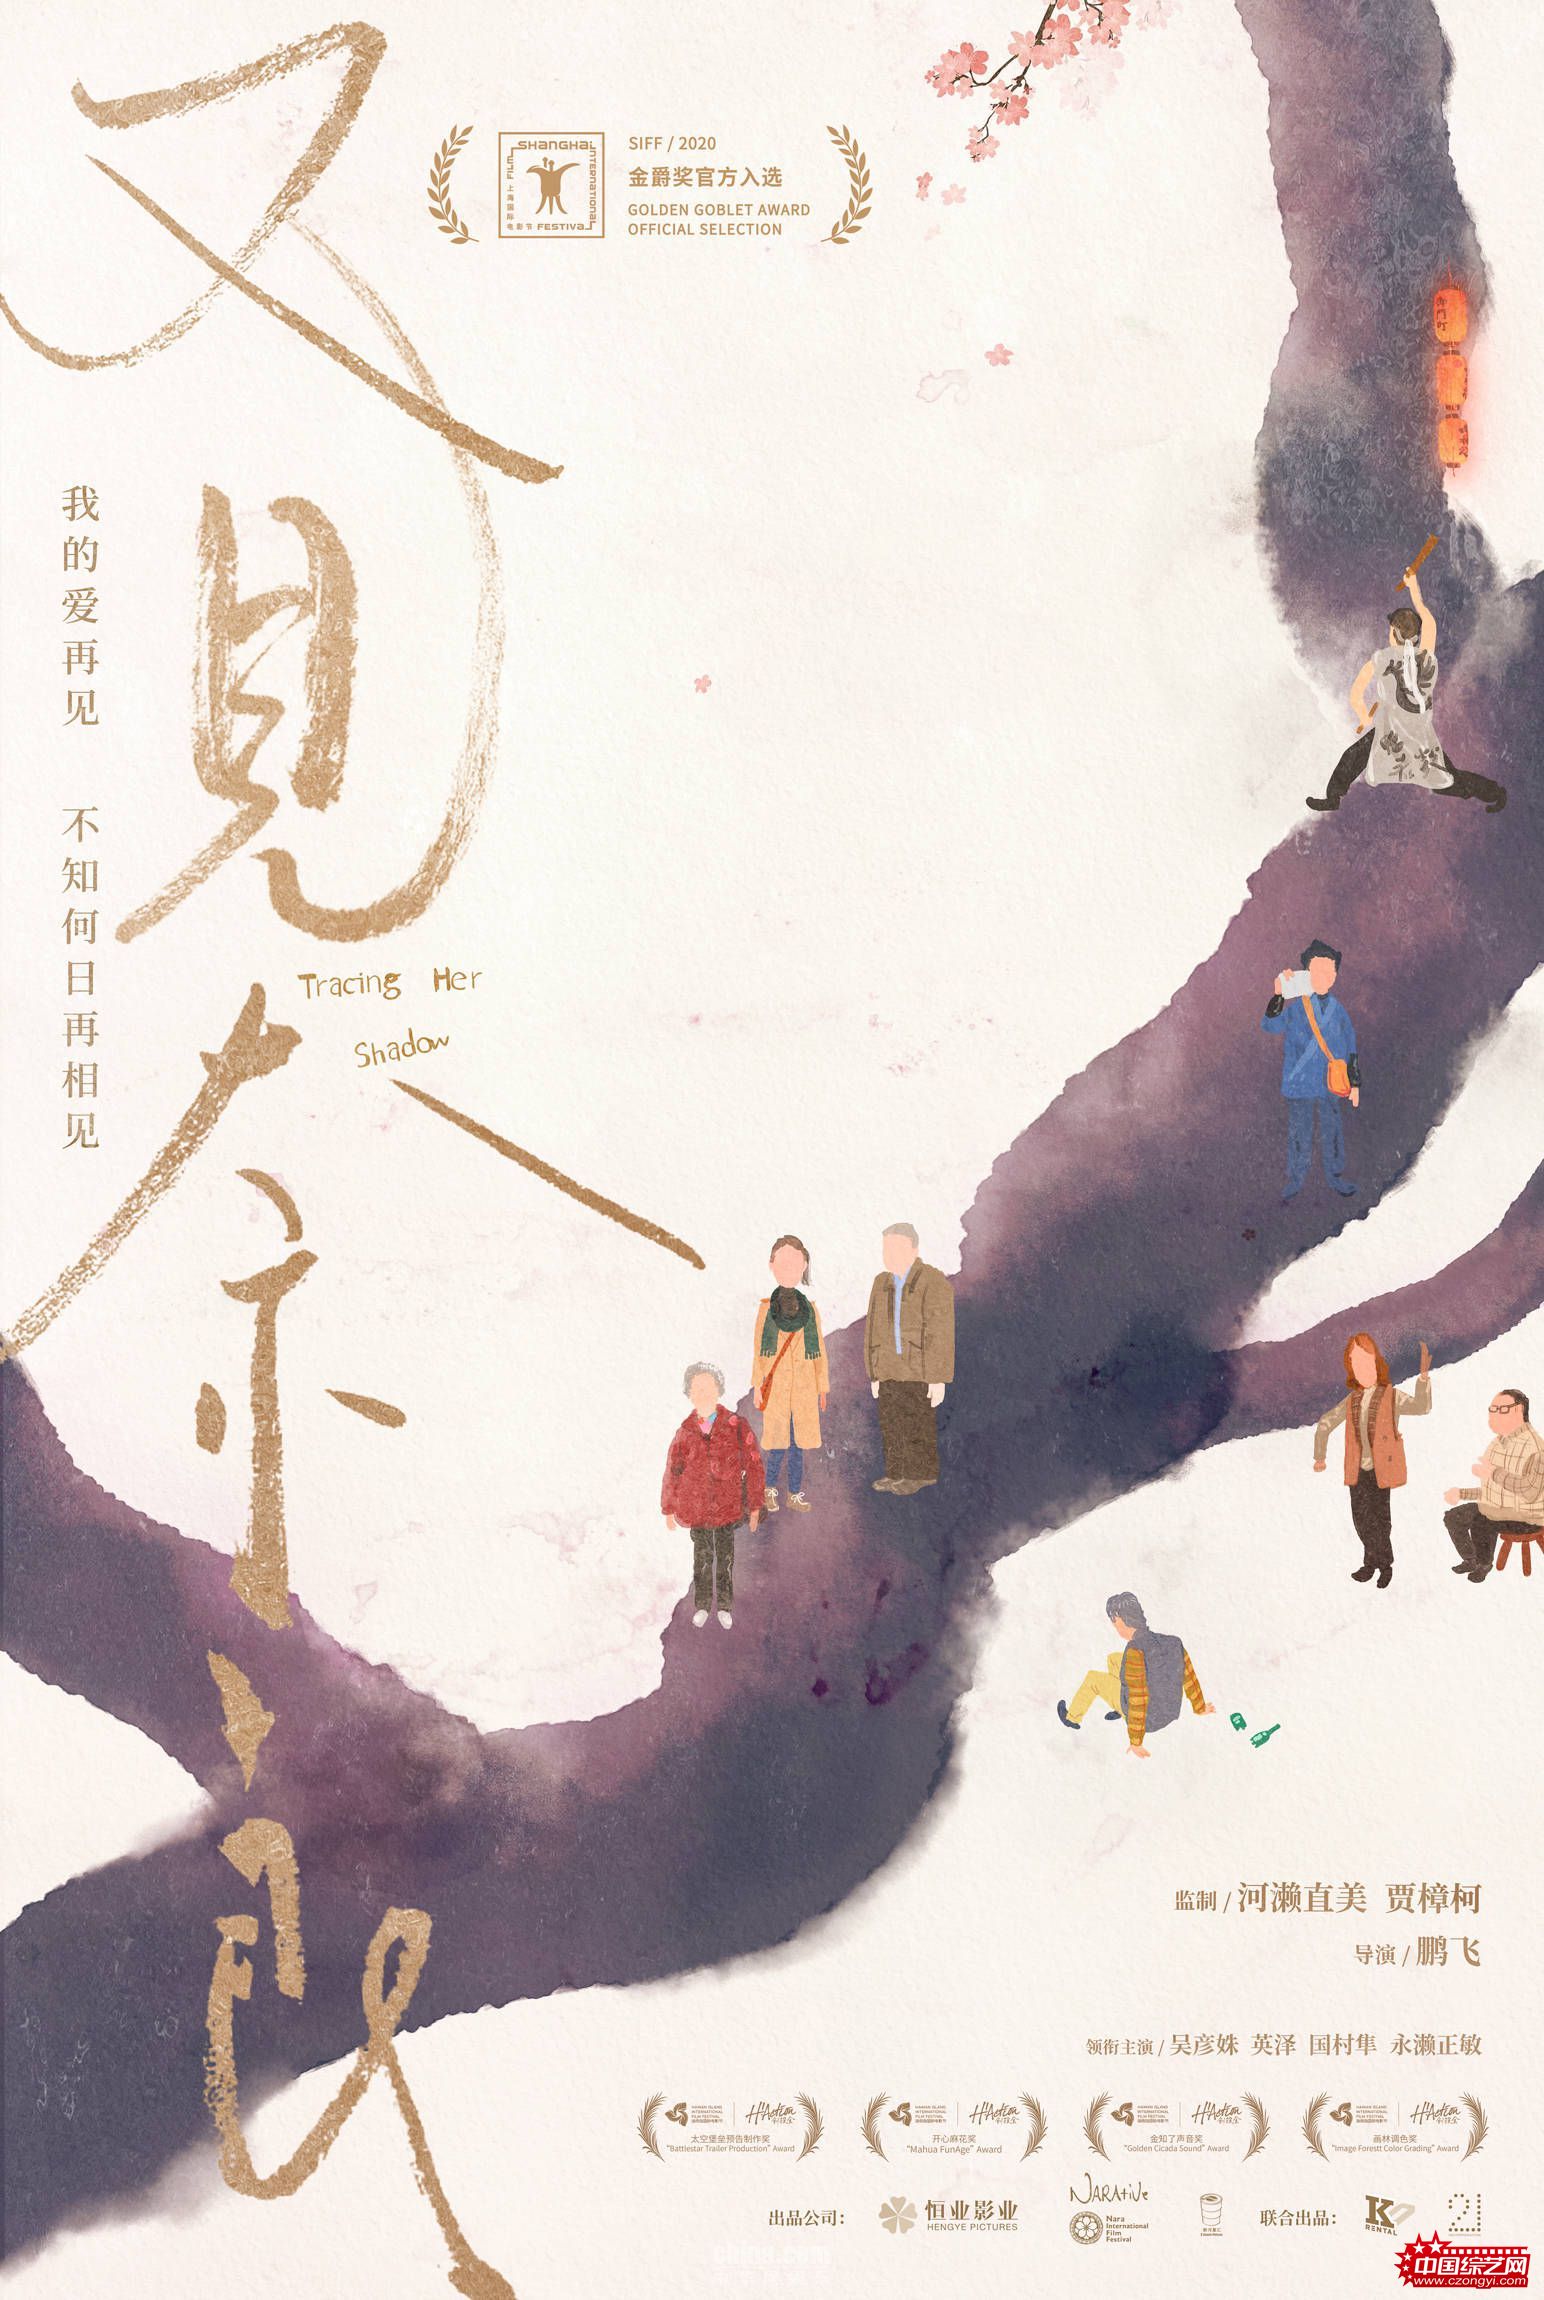 《又见奈良》入选上影节金爵奖 首发海报呈现漫漫寻女路 - 电影